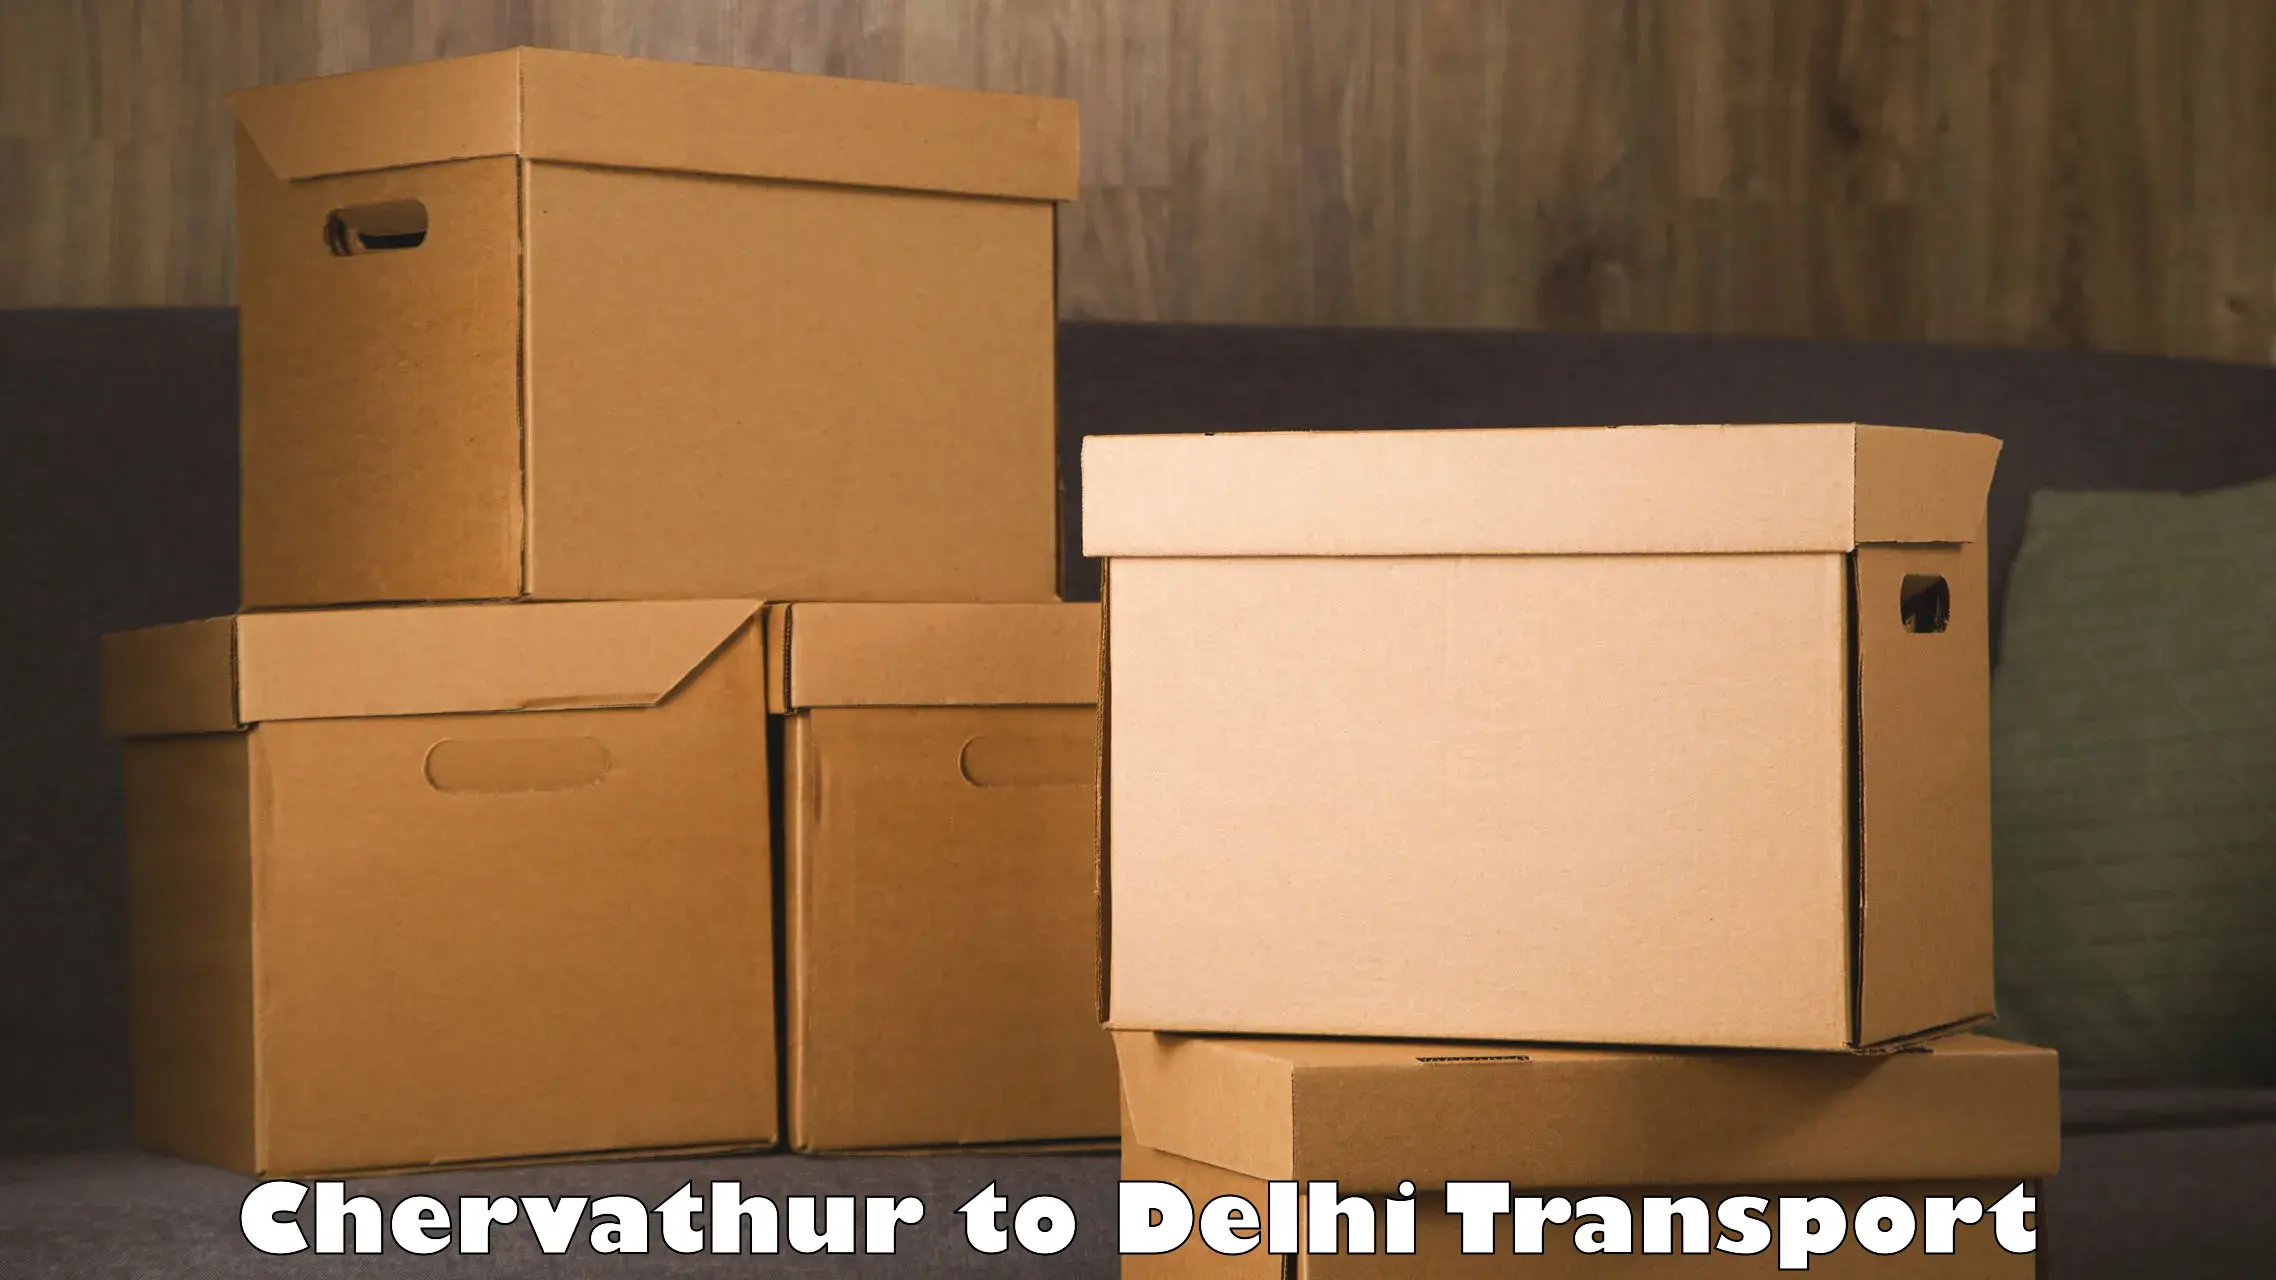 Two wheeler transport services Chervathur to Jamia Millia Islamia New Delhi